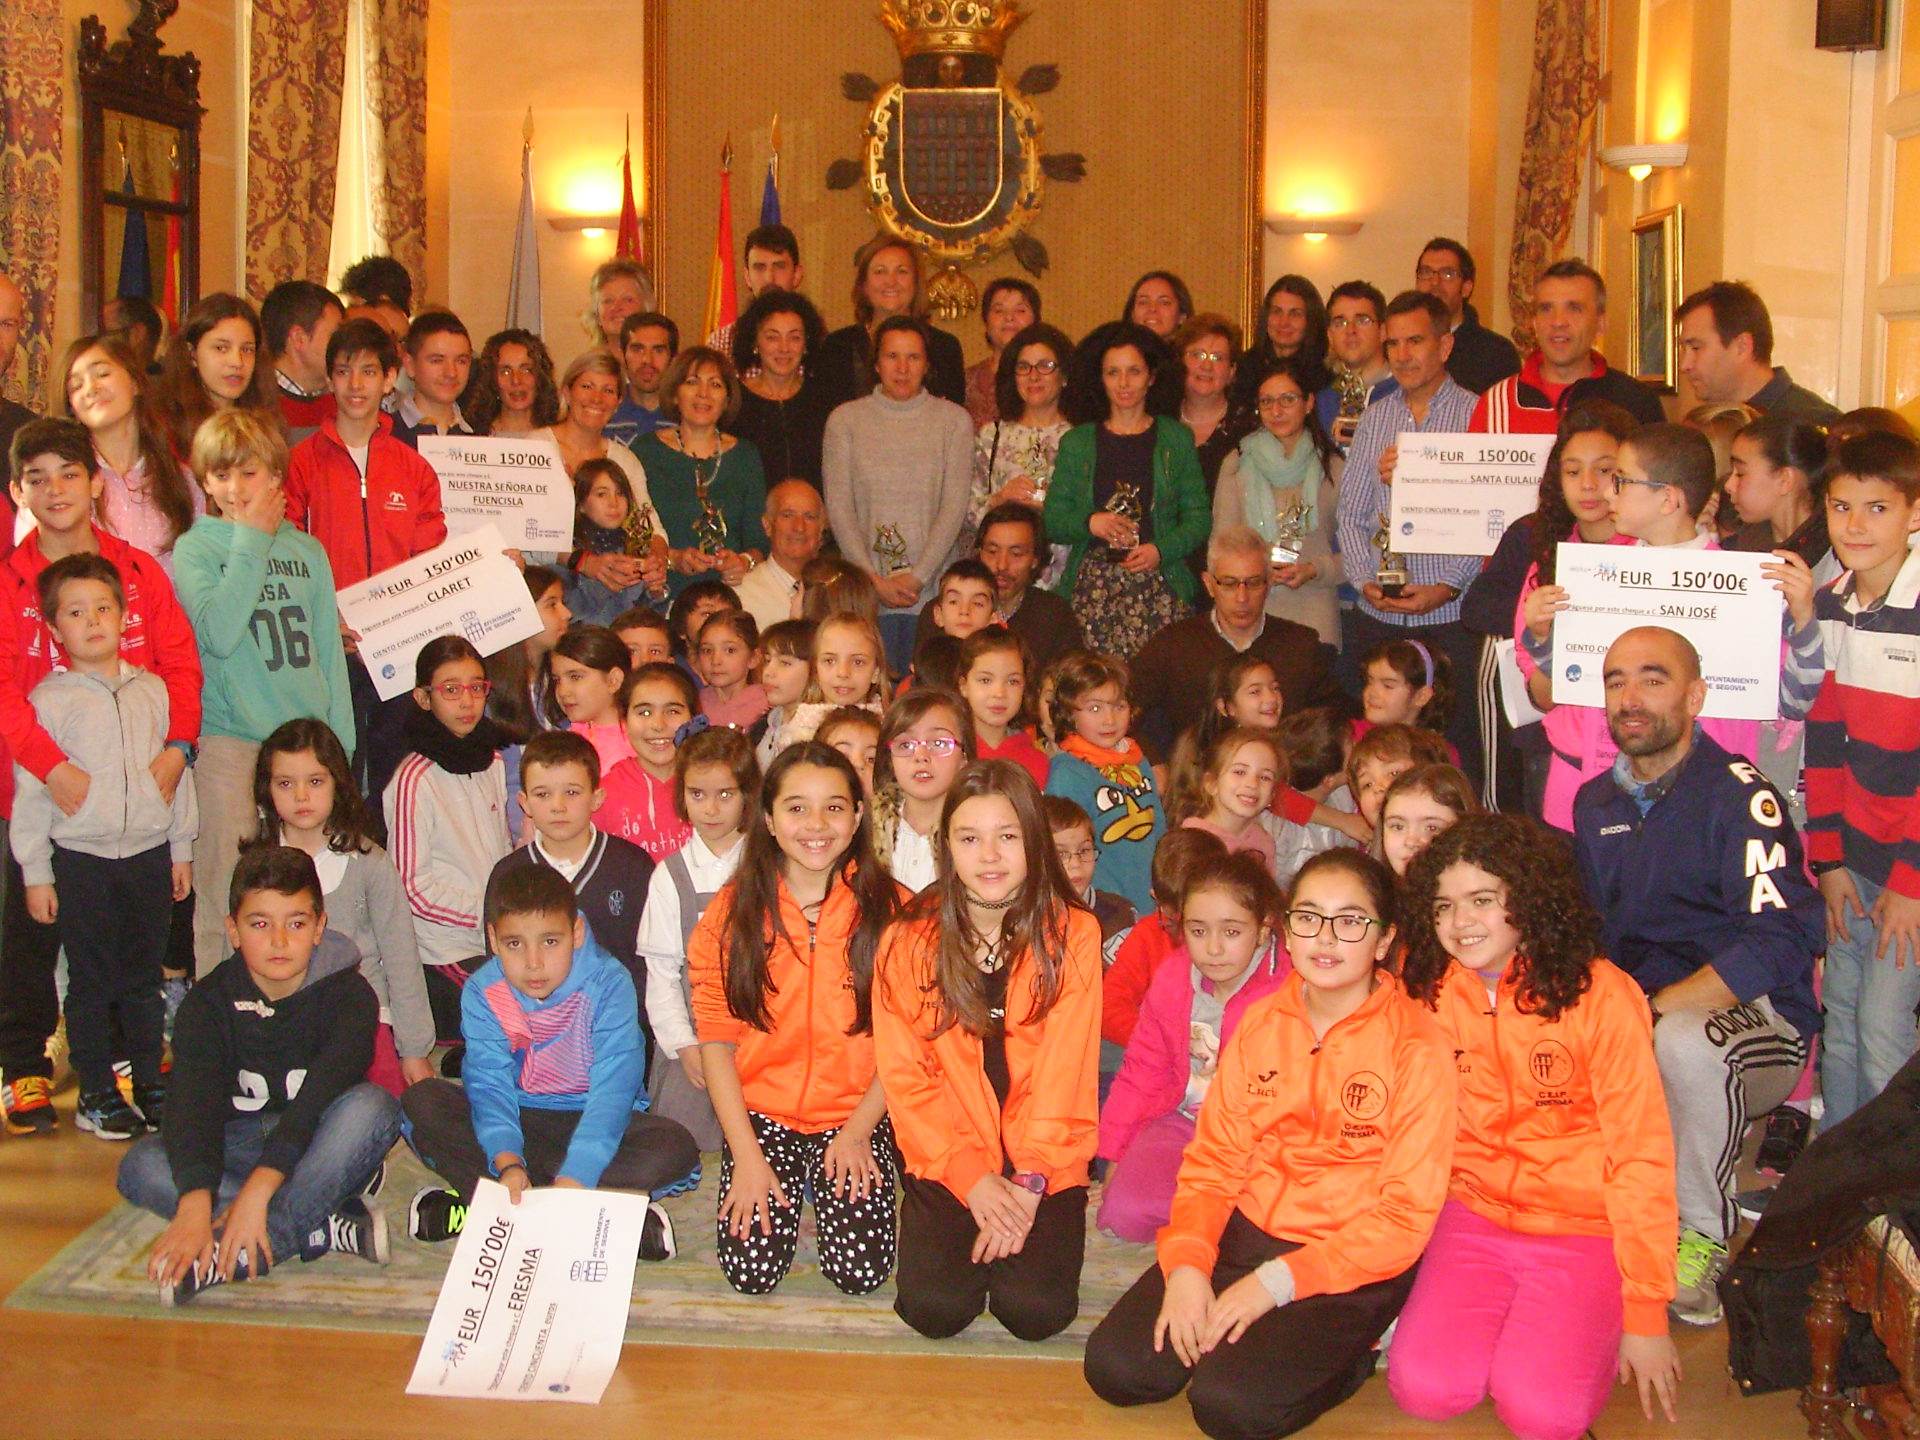 El Ayuntamiento reúne a corredores y ganadores de los concursos de Fotografía y Disfraces de la Carrera Fin de Año “Ciudad de Segovia”